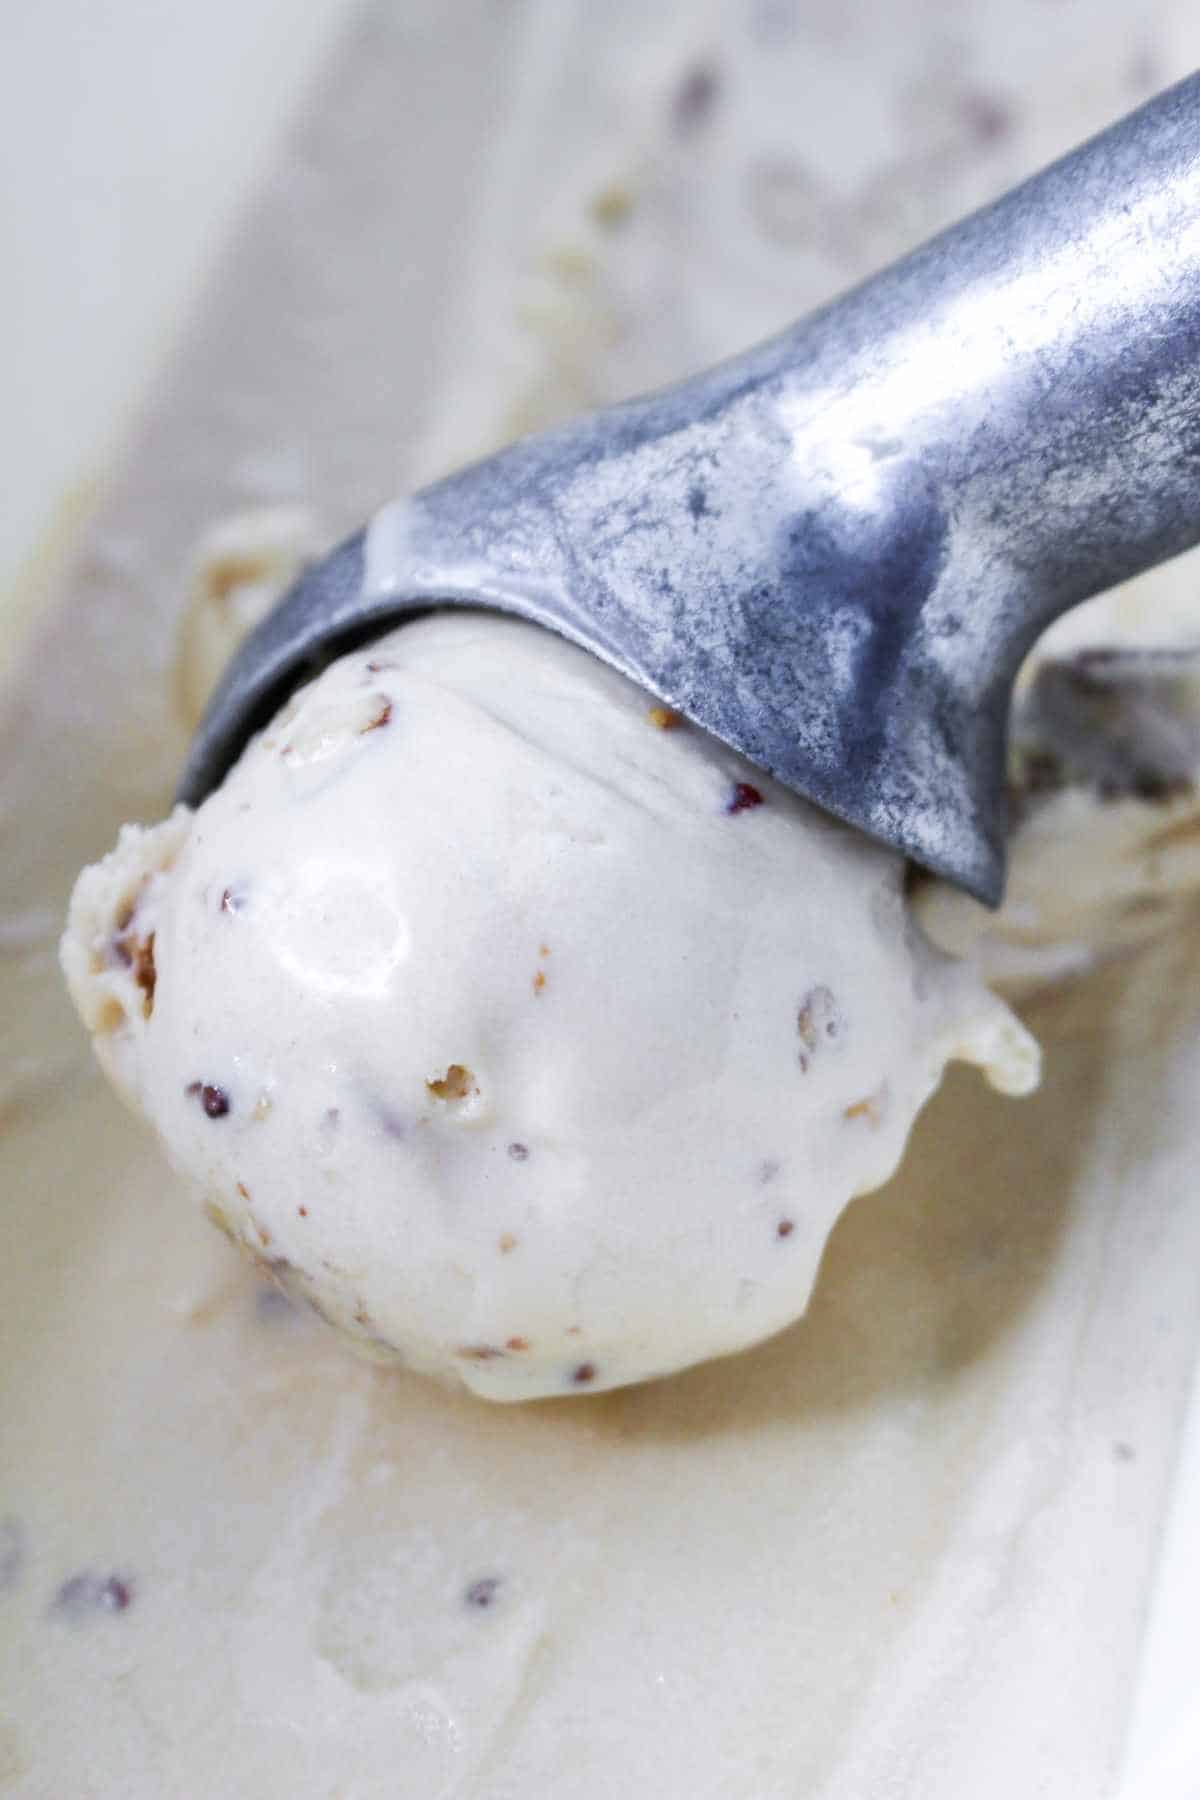 scoop of praline and cream ice cream.